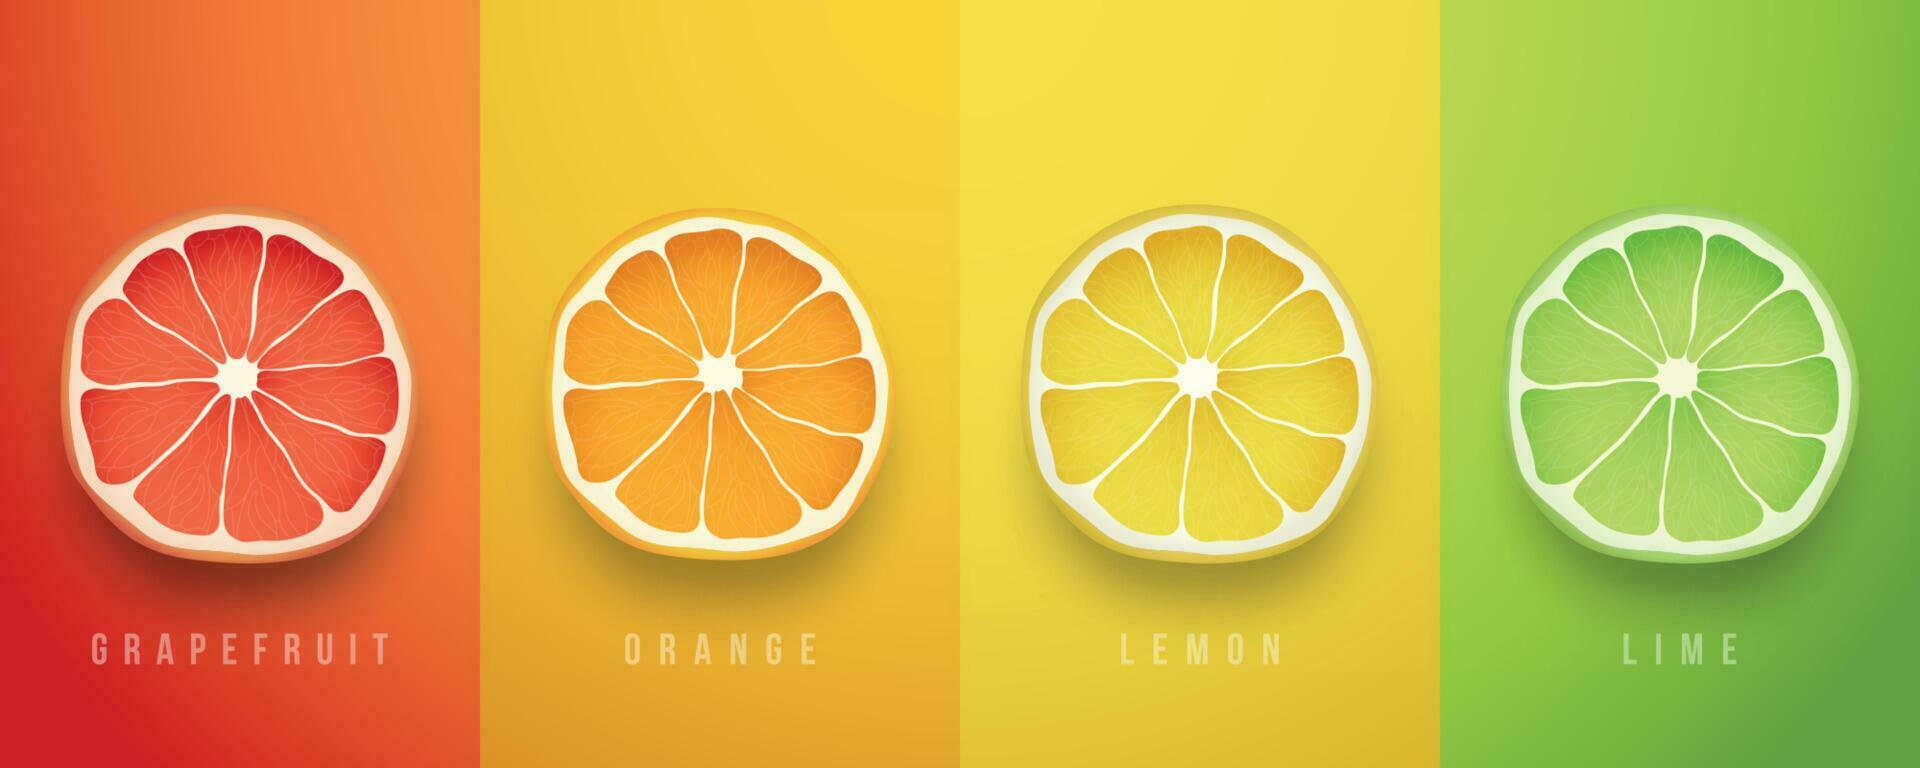 pompelmoes, oranje, citroen en limoen vers vruchten. 3d vector realistisch set.